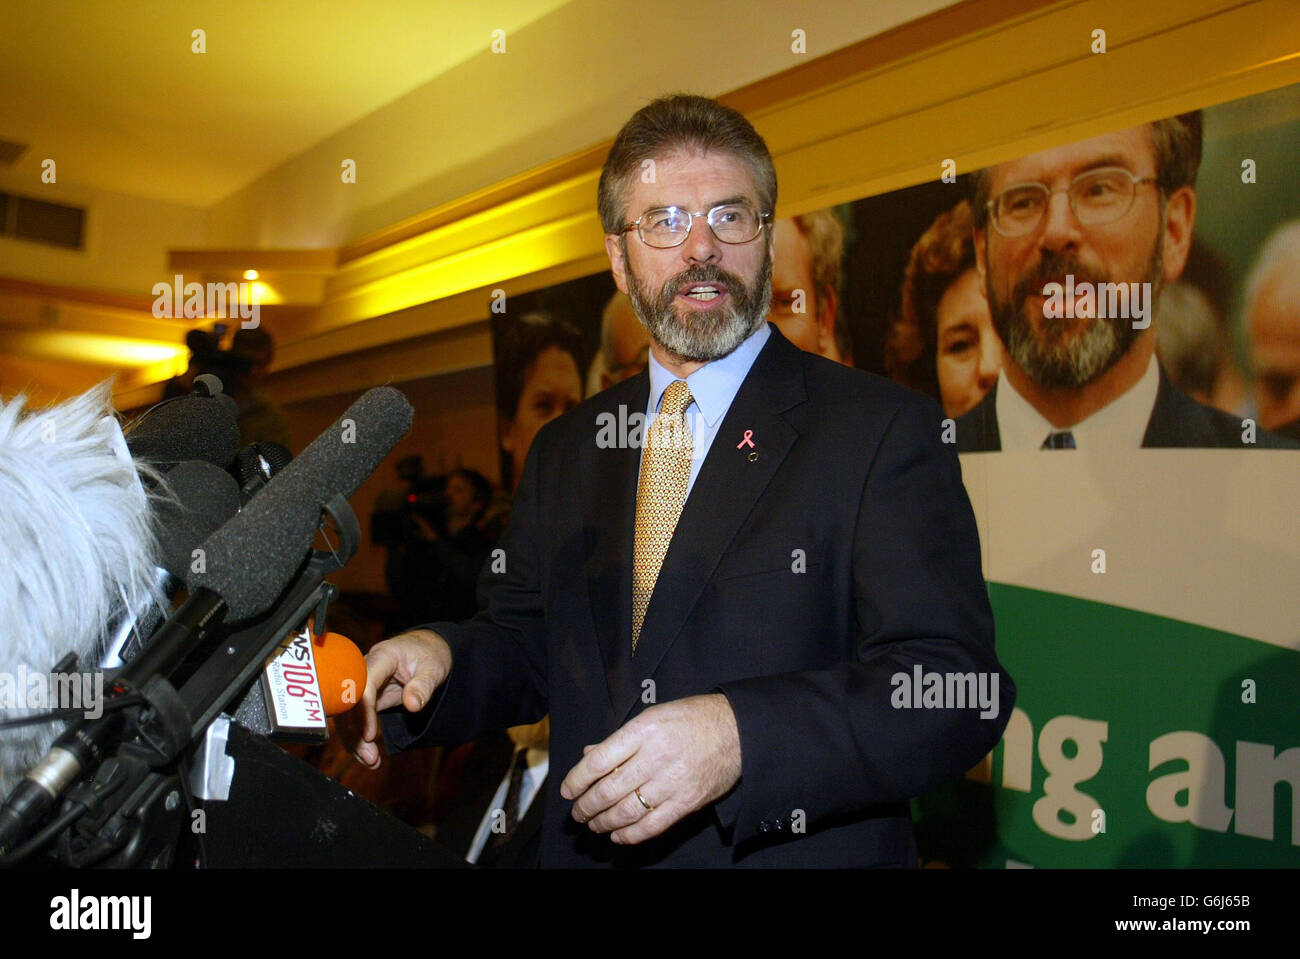 Il presidente del Sinn Fein Gerry Adams ha parlato a Belfast, dove ha dato il segnale più chiaro che la leadership dell’IRA è sull’orlo di confermare un’importante mossa di smantellamento. Stava parlando dopo che Downing Street ha dato il via libera per le elezioni all'Assemblea dell'Irlanda del Nord il 26 novembre. Foto Stock